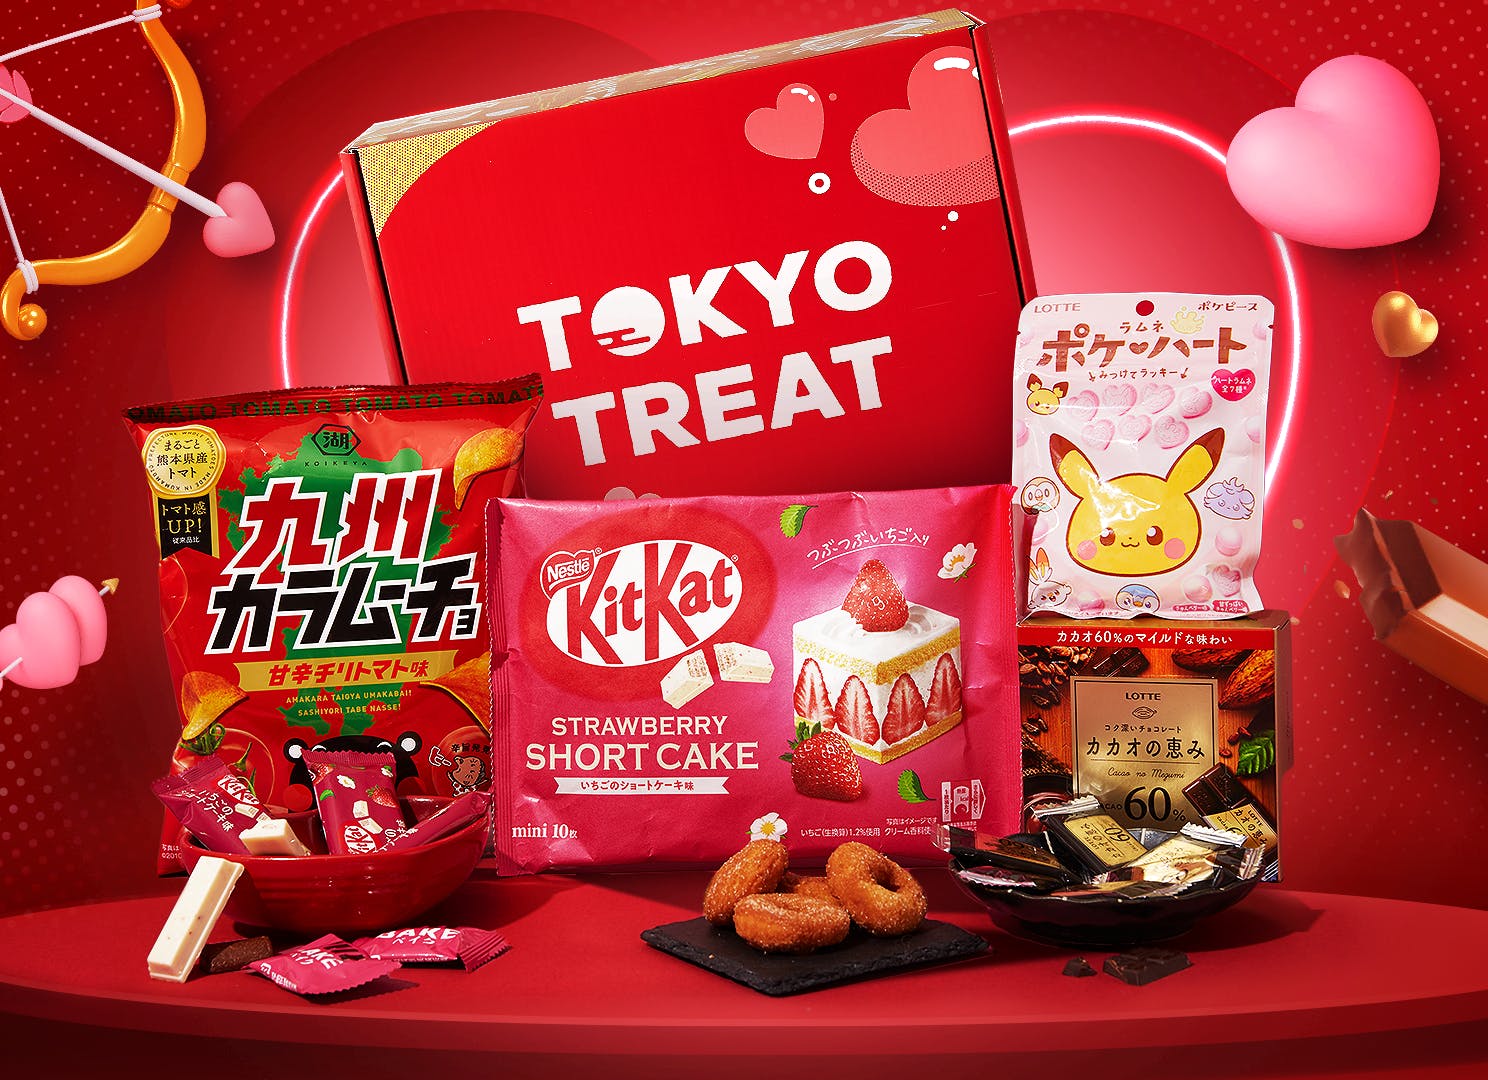 Découvrez la Box de Snacks Japonais à prix réduit chez Tokyo Snack Box -  TOKYO SNACK BOX